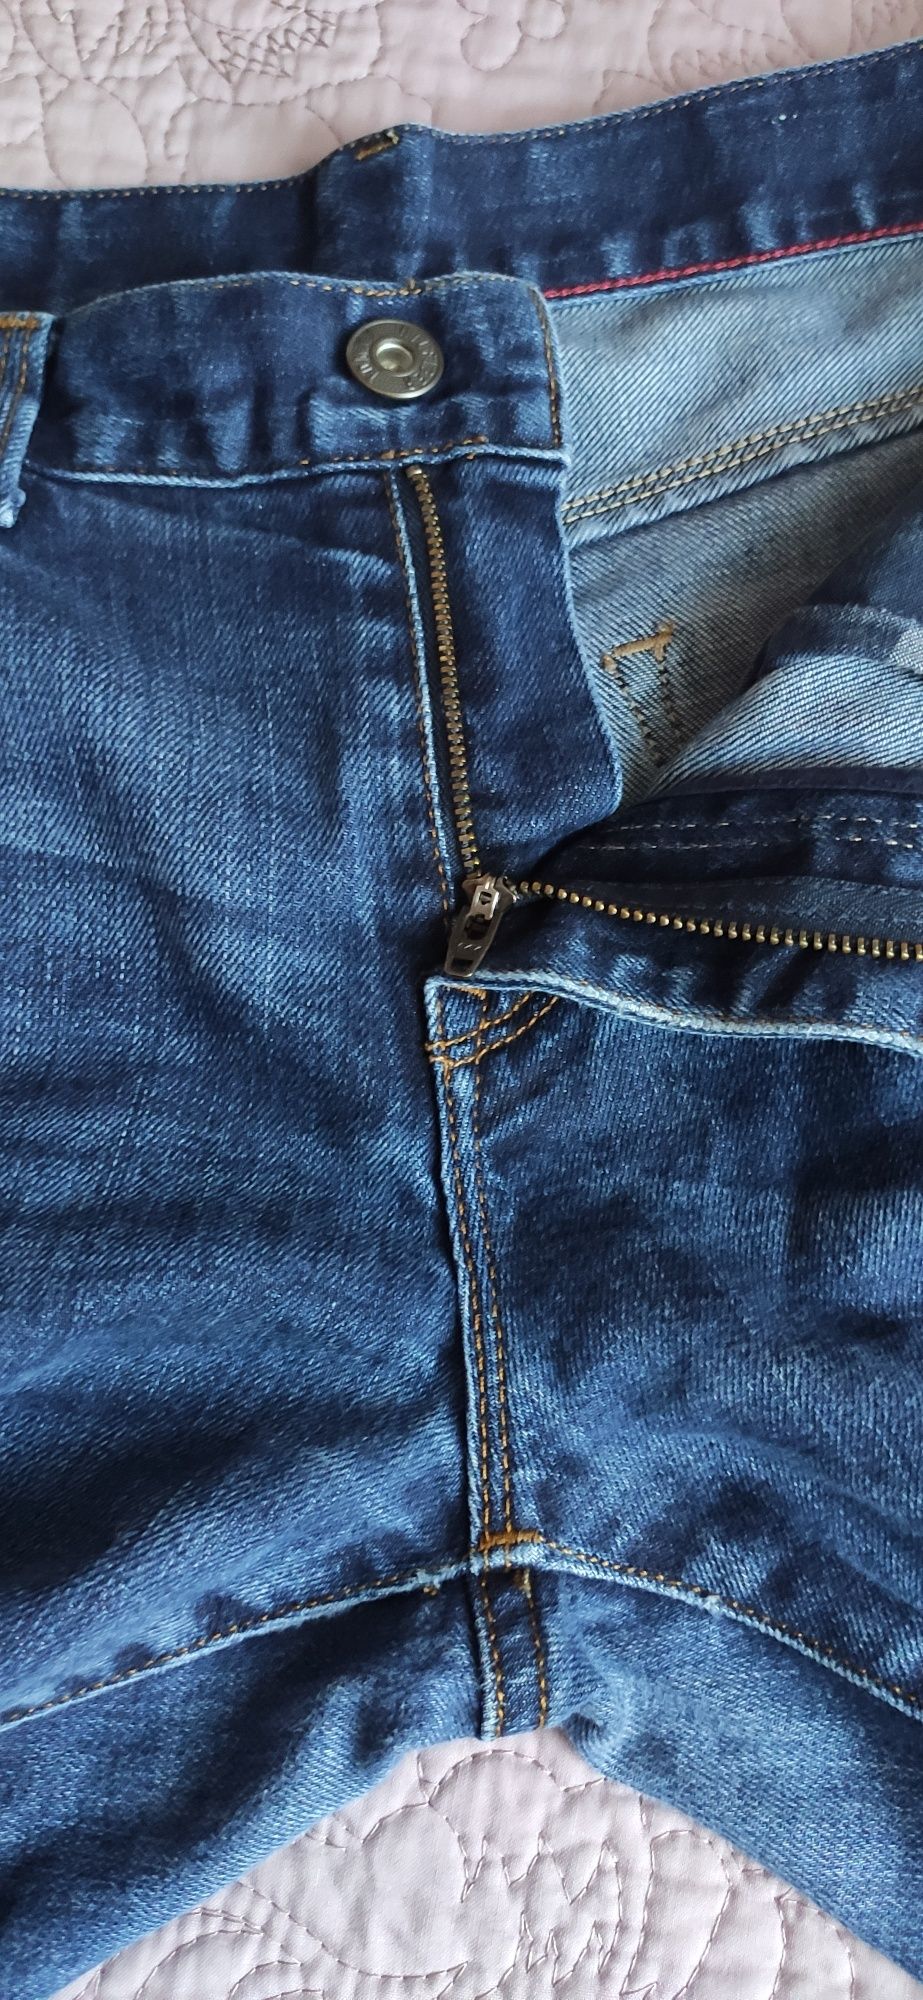 Джинсы мужские Tommy Hilfiger темно-синего цвета, размер 30/32